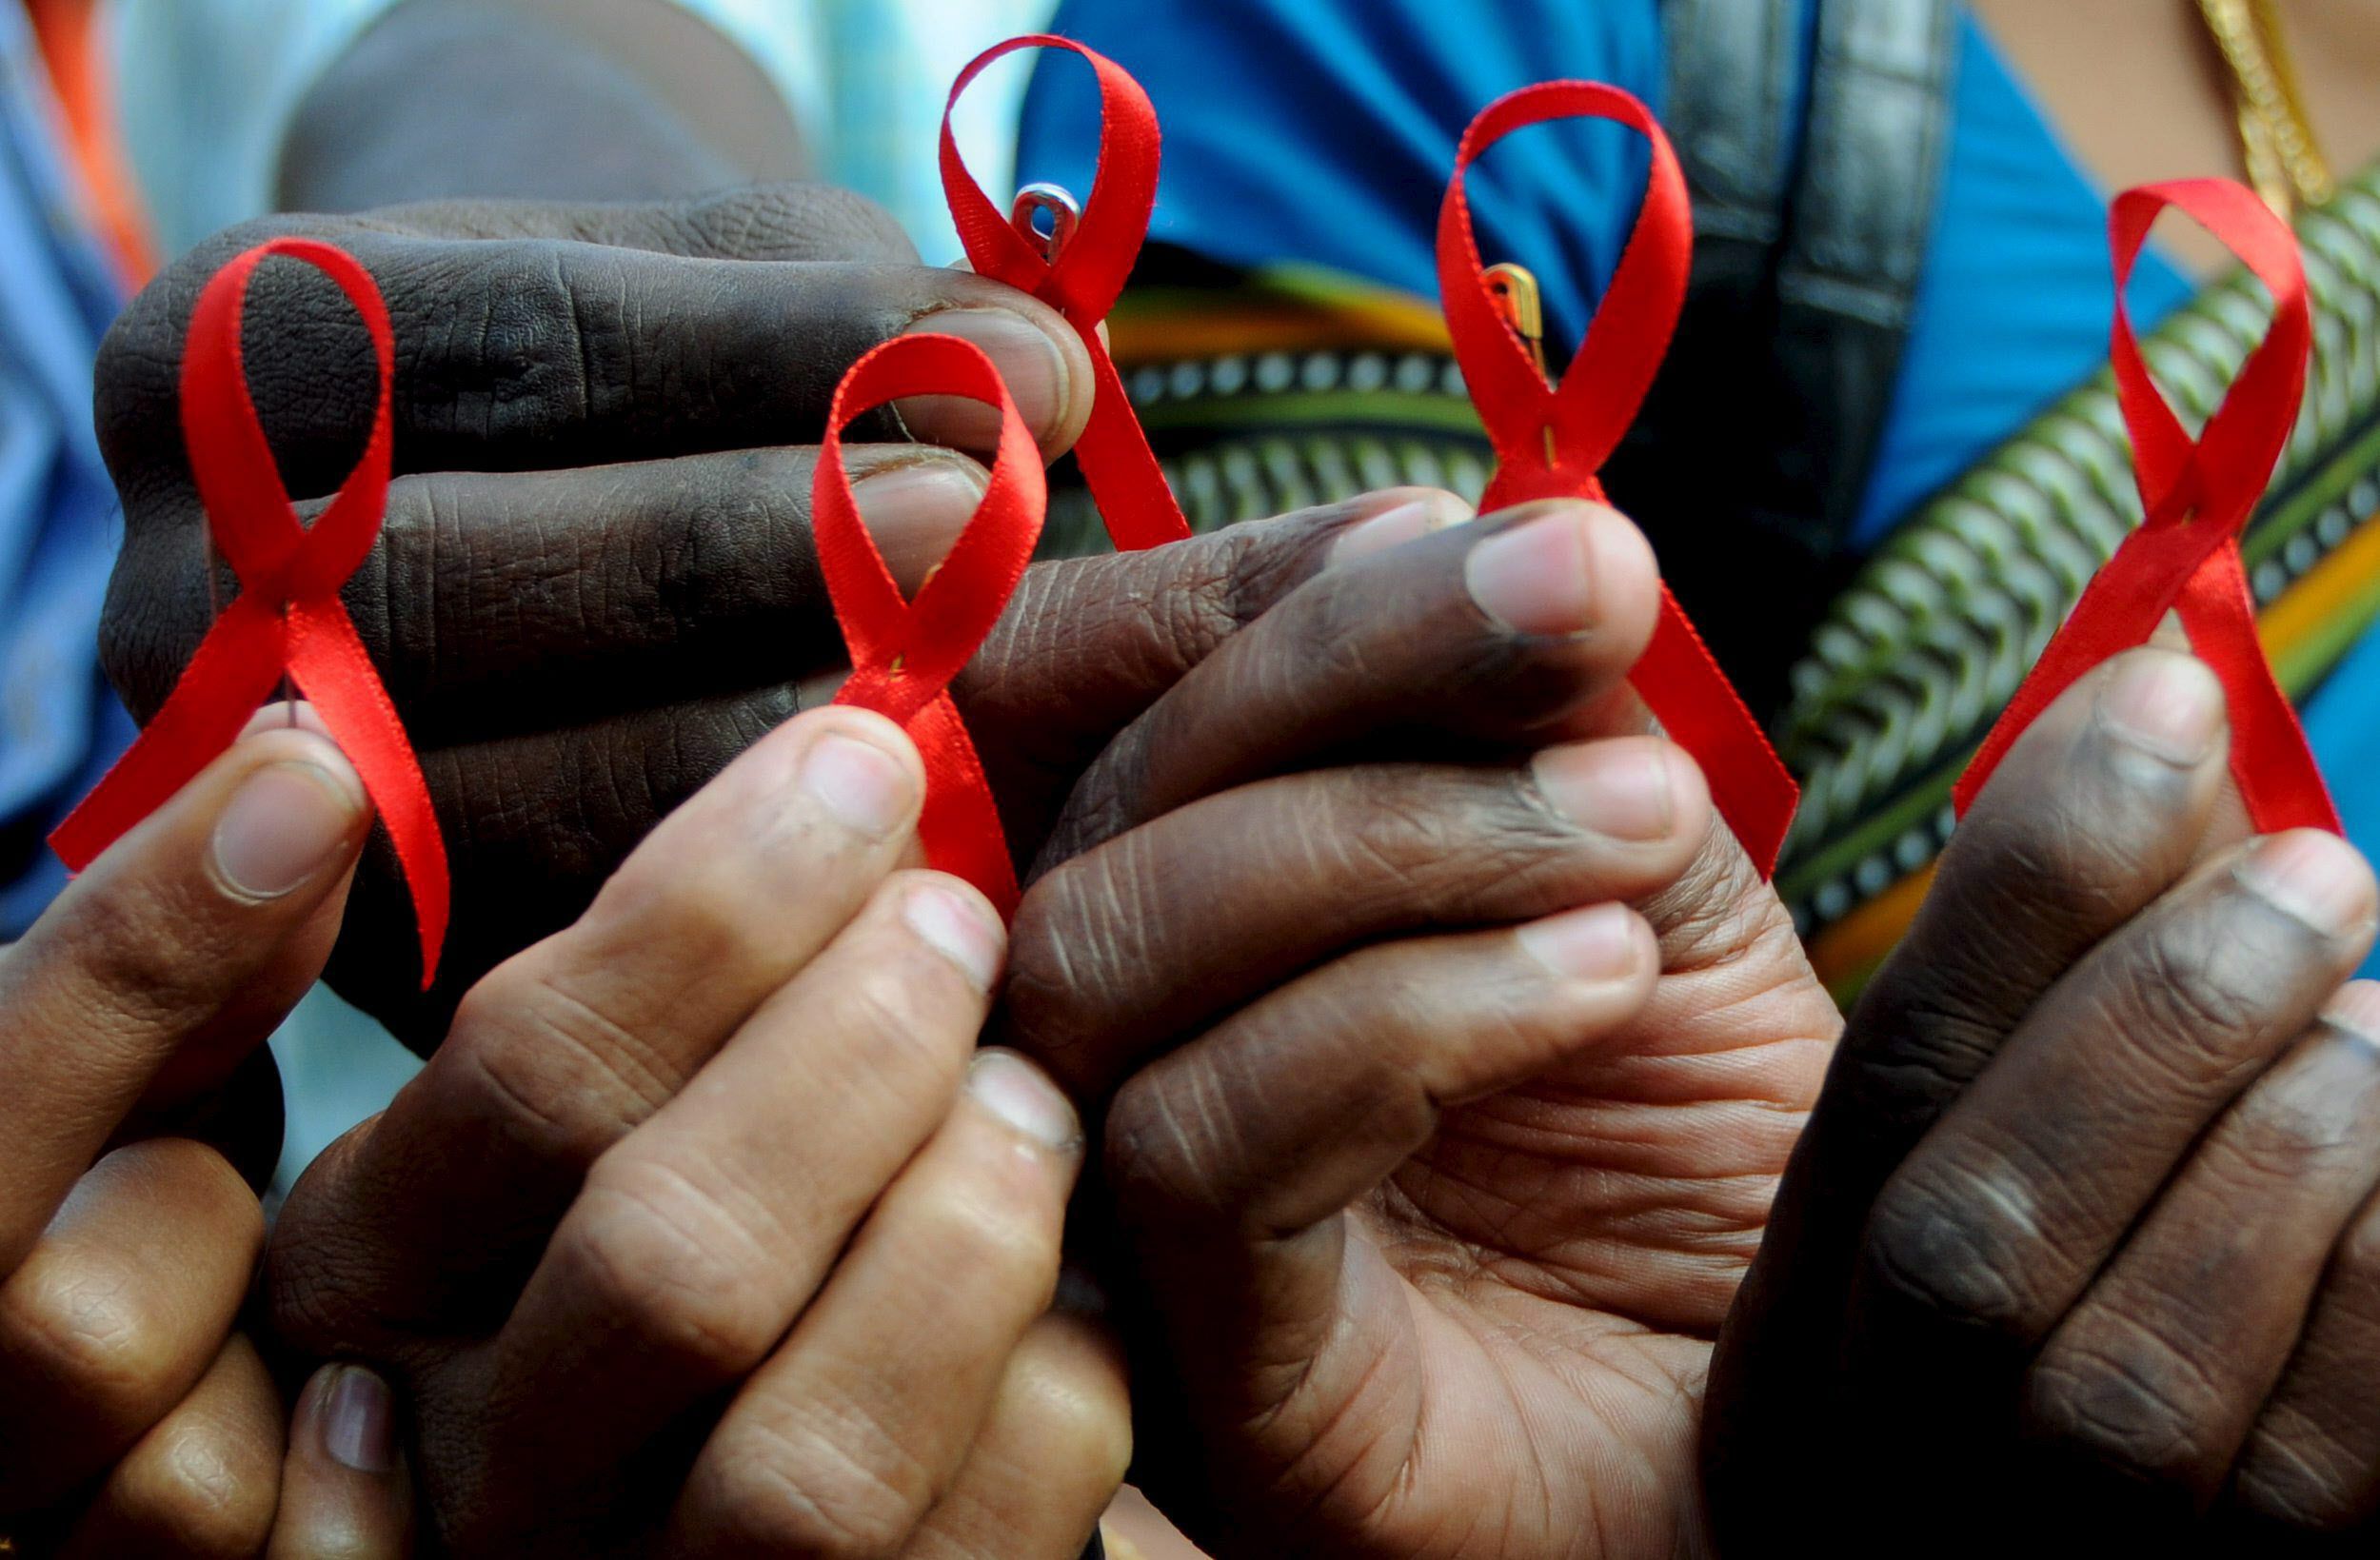 Aumenta el contagio de sida en América Latina por falta de prevención